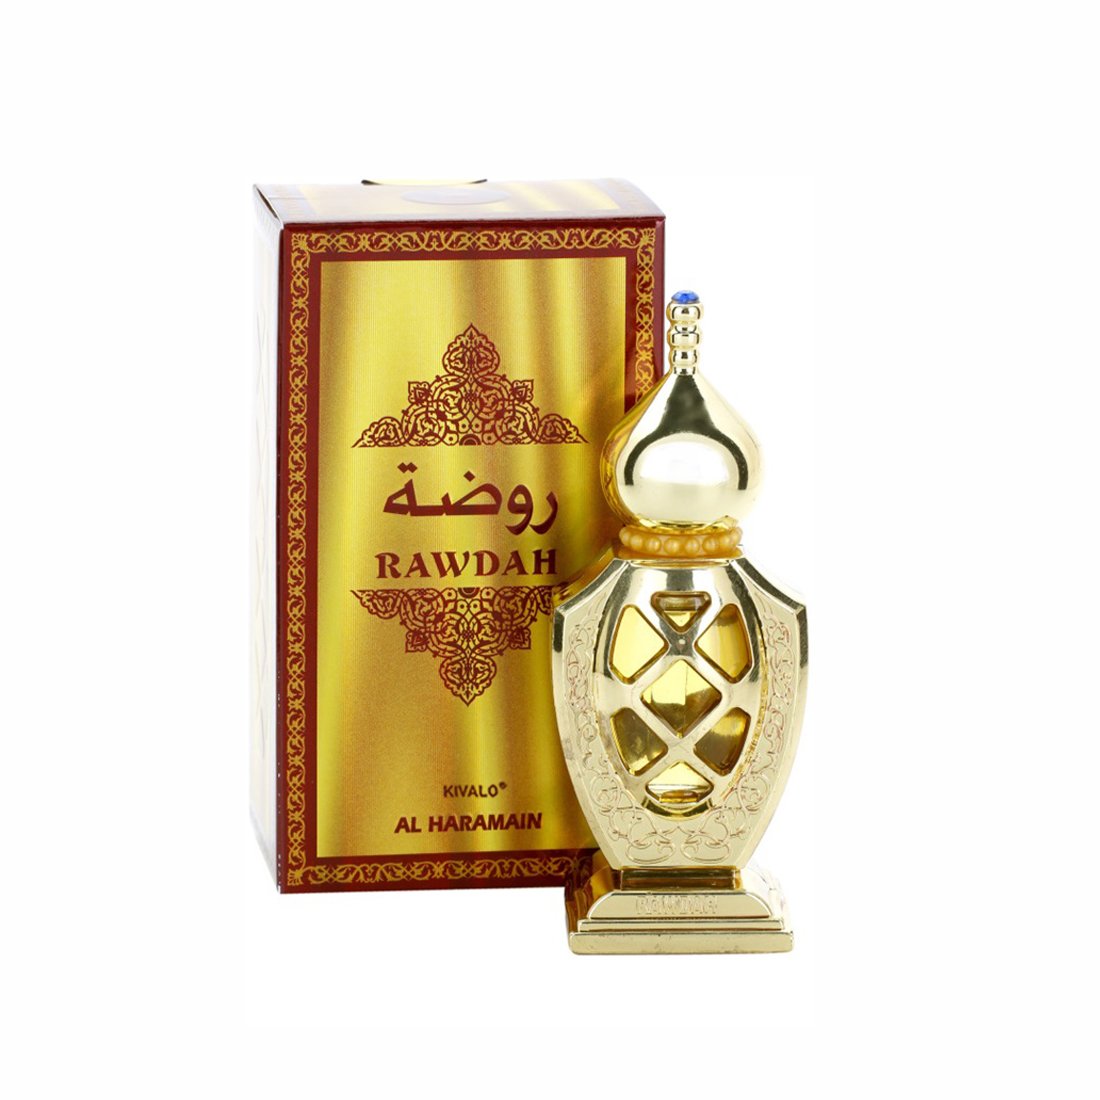 Al Haramain Rawdah Attar 15 ml